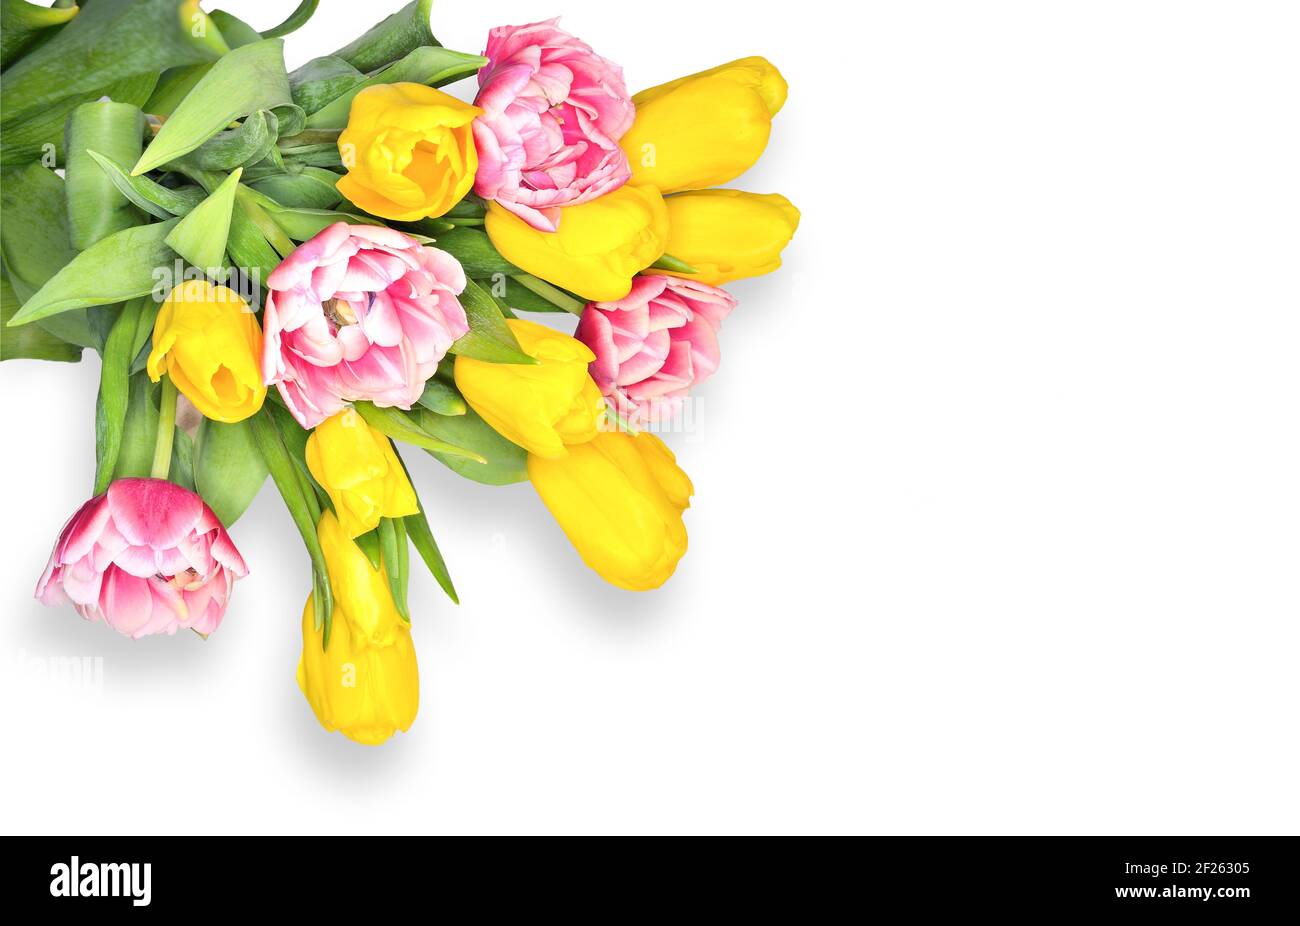 Bouquet élégant de fleurs de tulipe jaune printemps et blanc rose sur fond blanc avec espace vide pour le texte. Motif fleuri festif pour carte de vœux, Banque D'Images